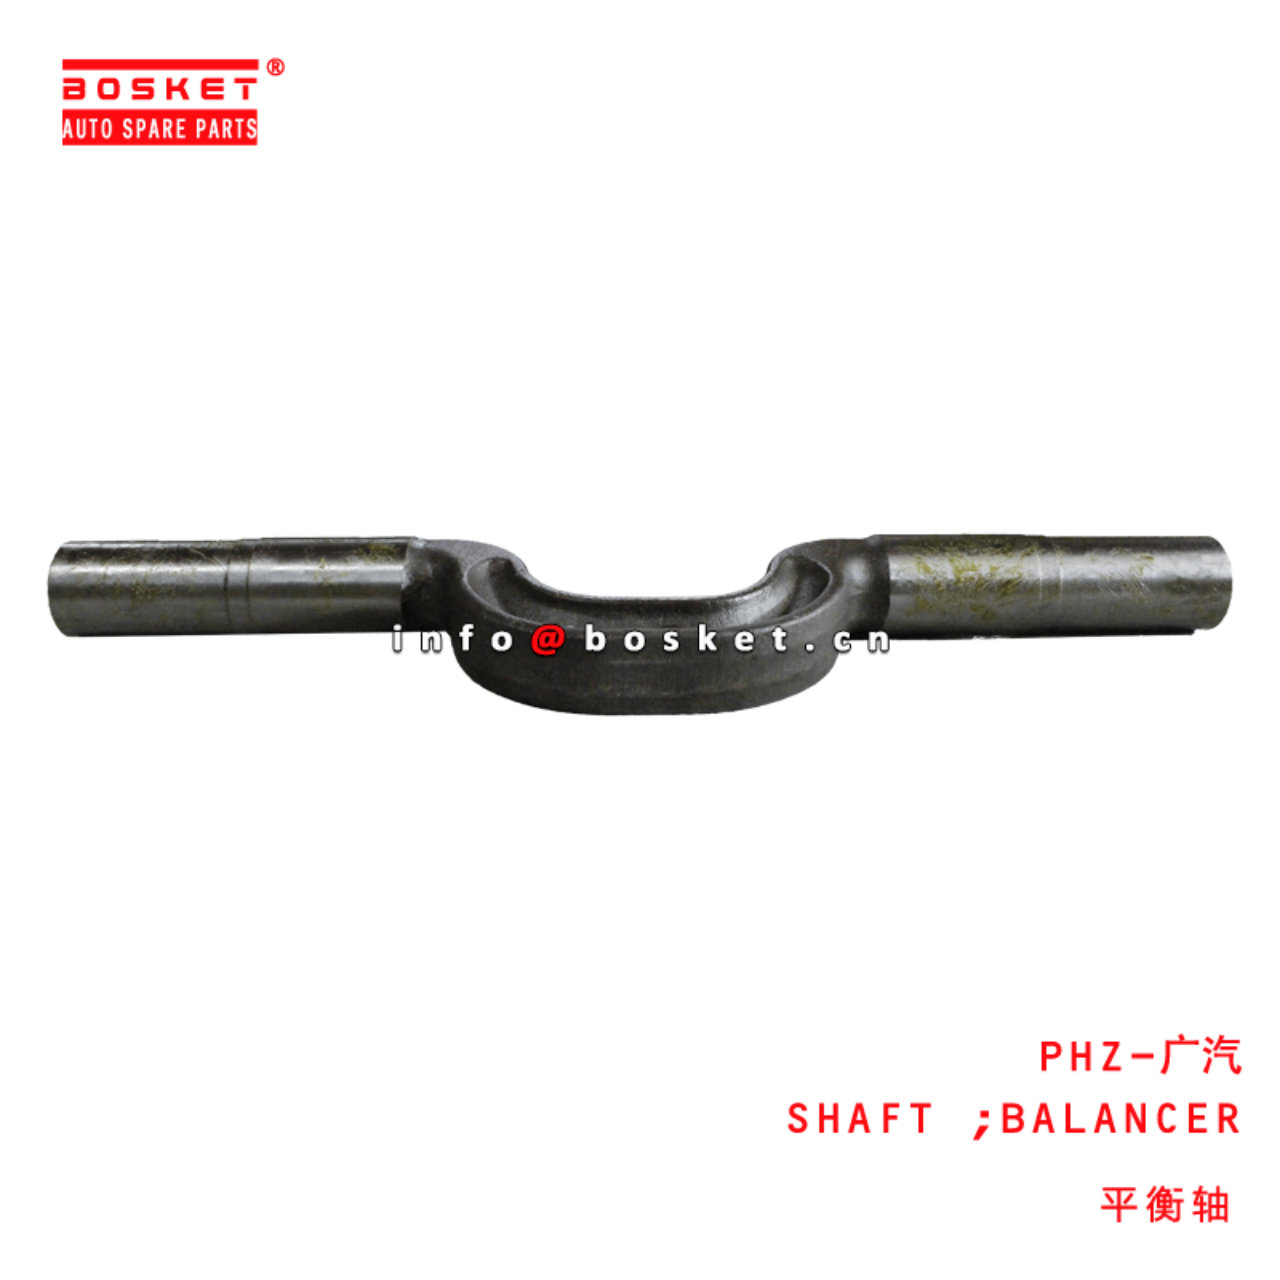  PHZ-广汽 Balancer Shaft Suitable For HINO 700